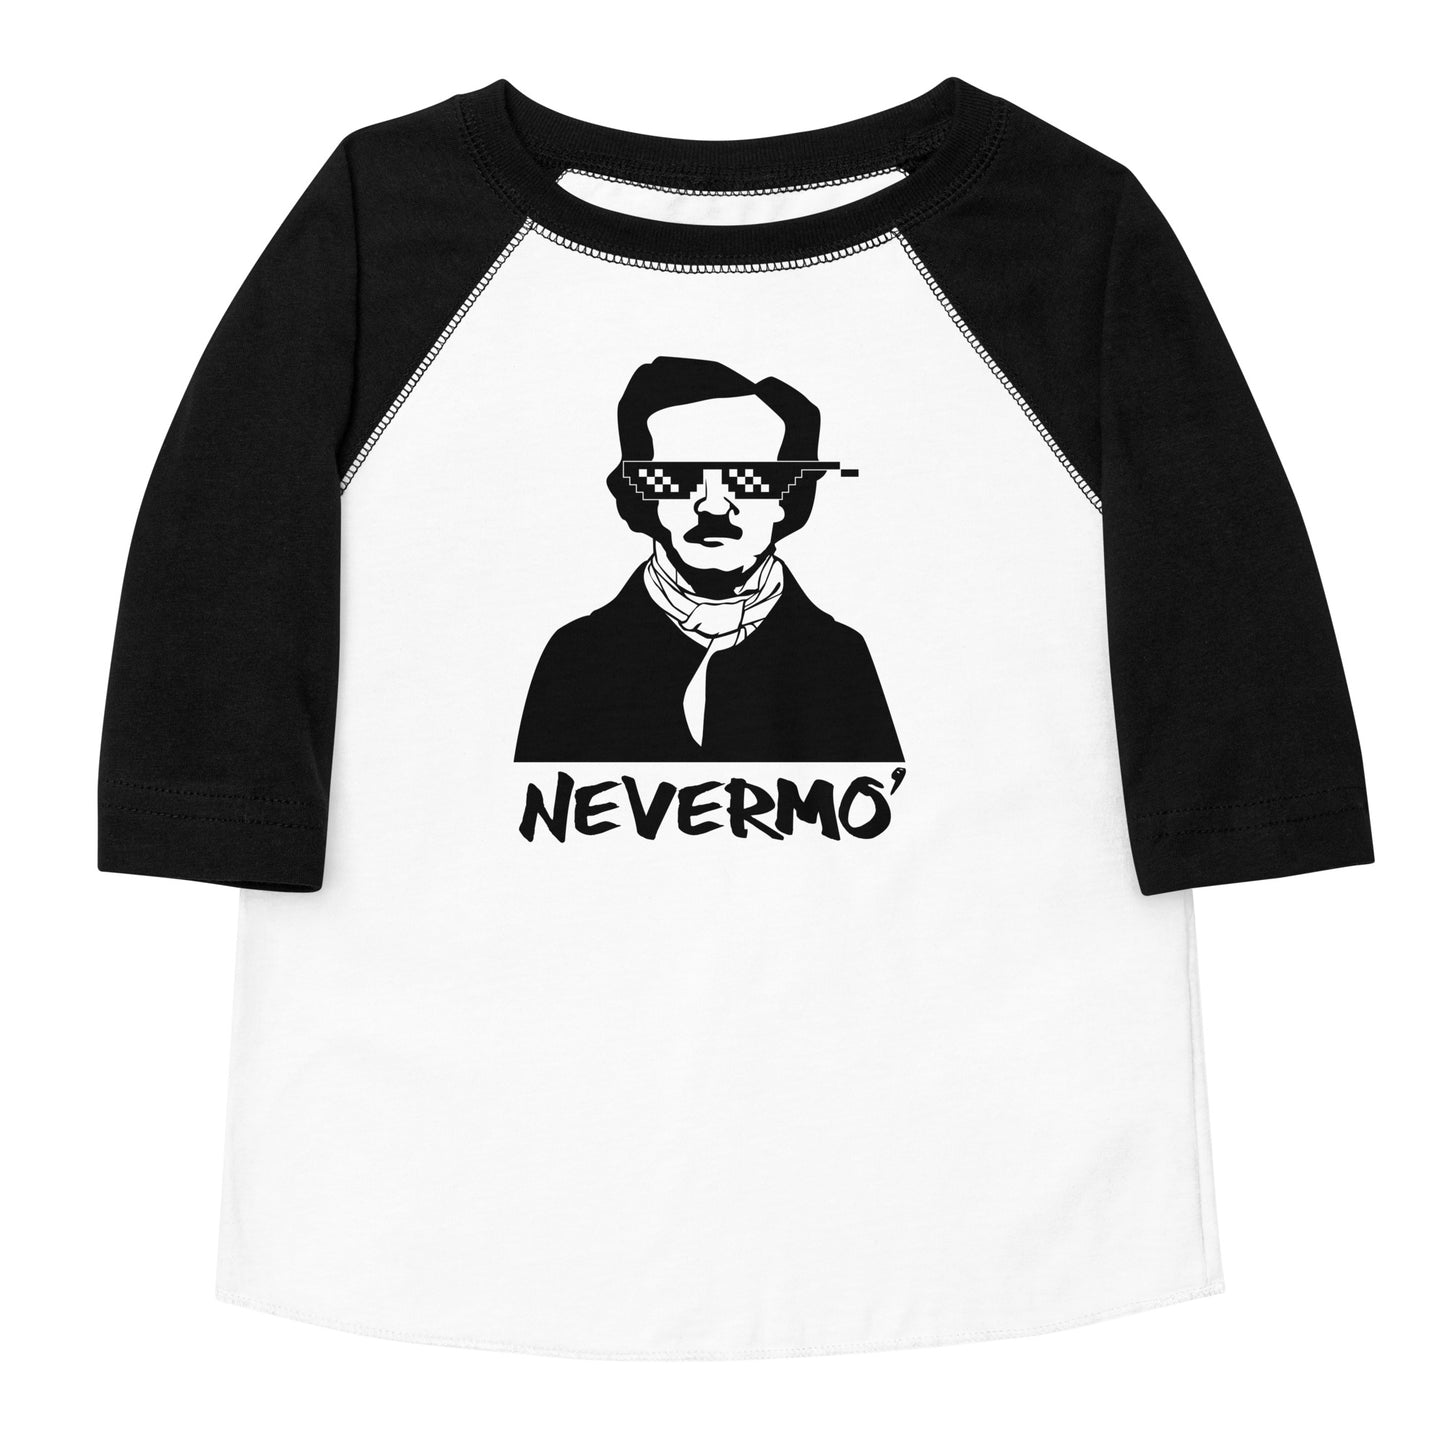 Edgar Allan Poe "Nevermo" Toddler baseball shirt - White Shirt Black Front